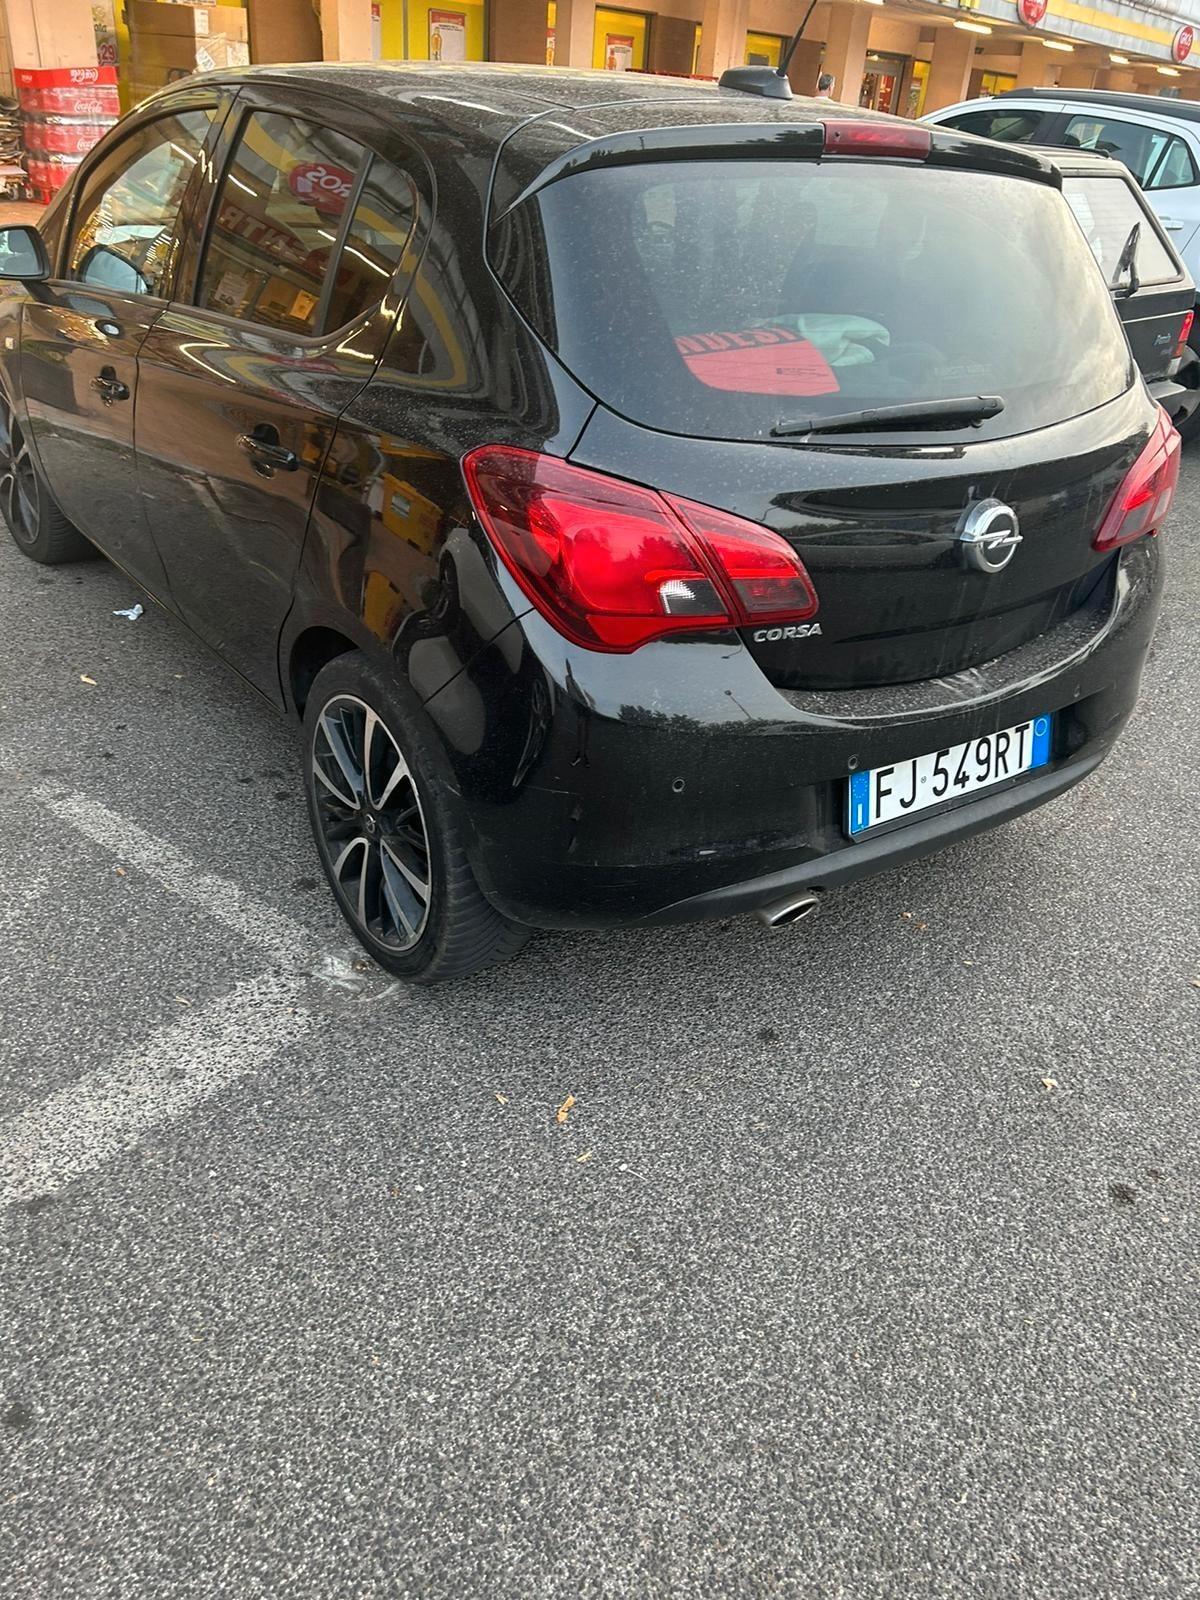 Opel Corsa GPL